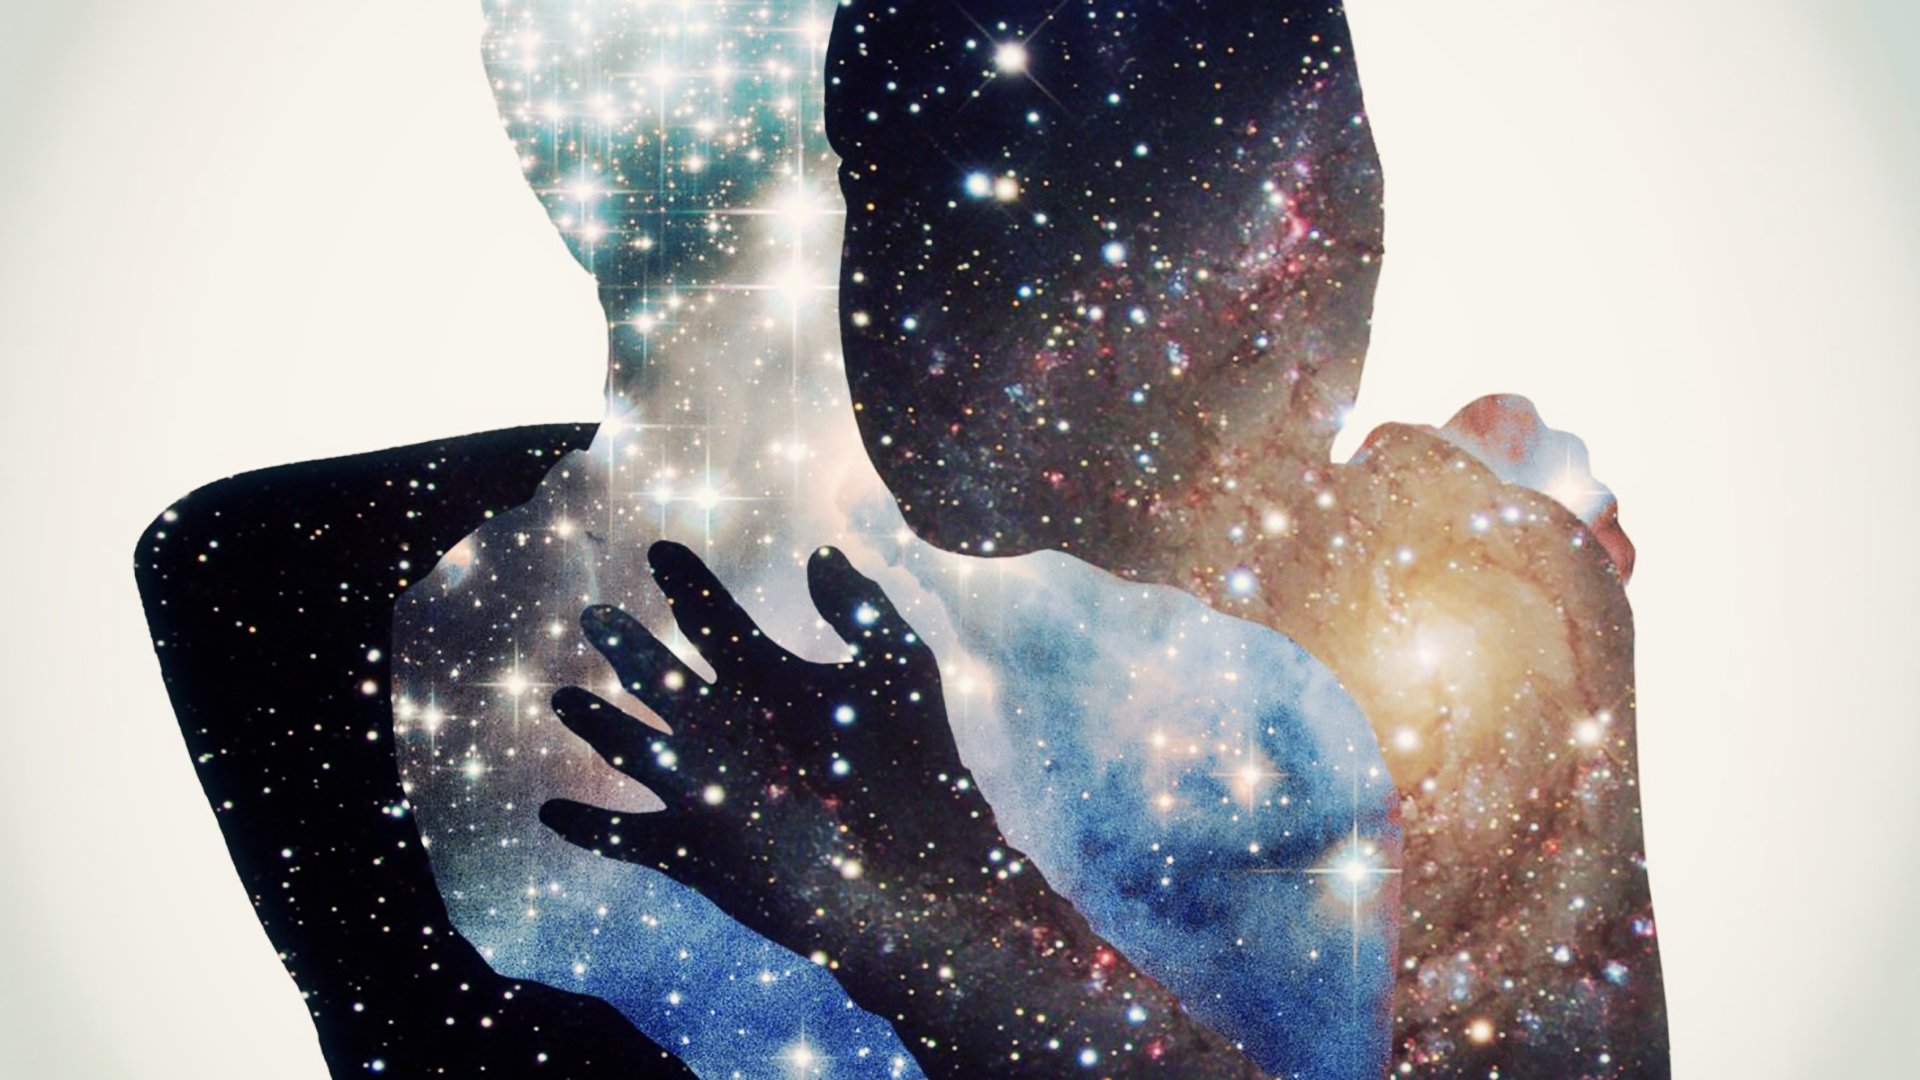 Loving heart soul. Объятия космос. Космос внутри человека. Вселенная мужчина и женщина. Вселенная в руках.